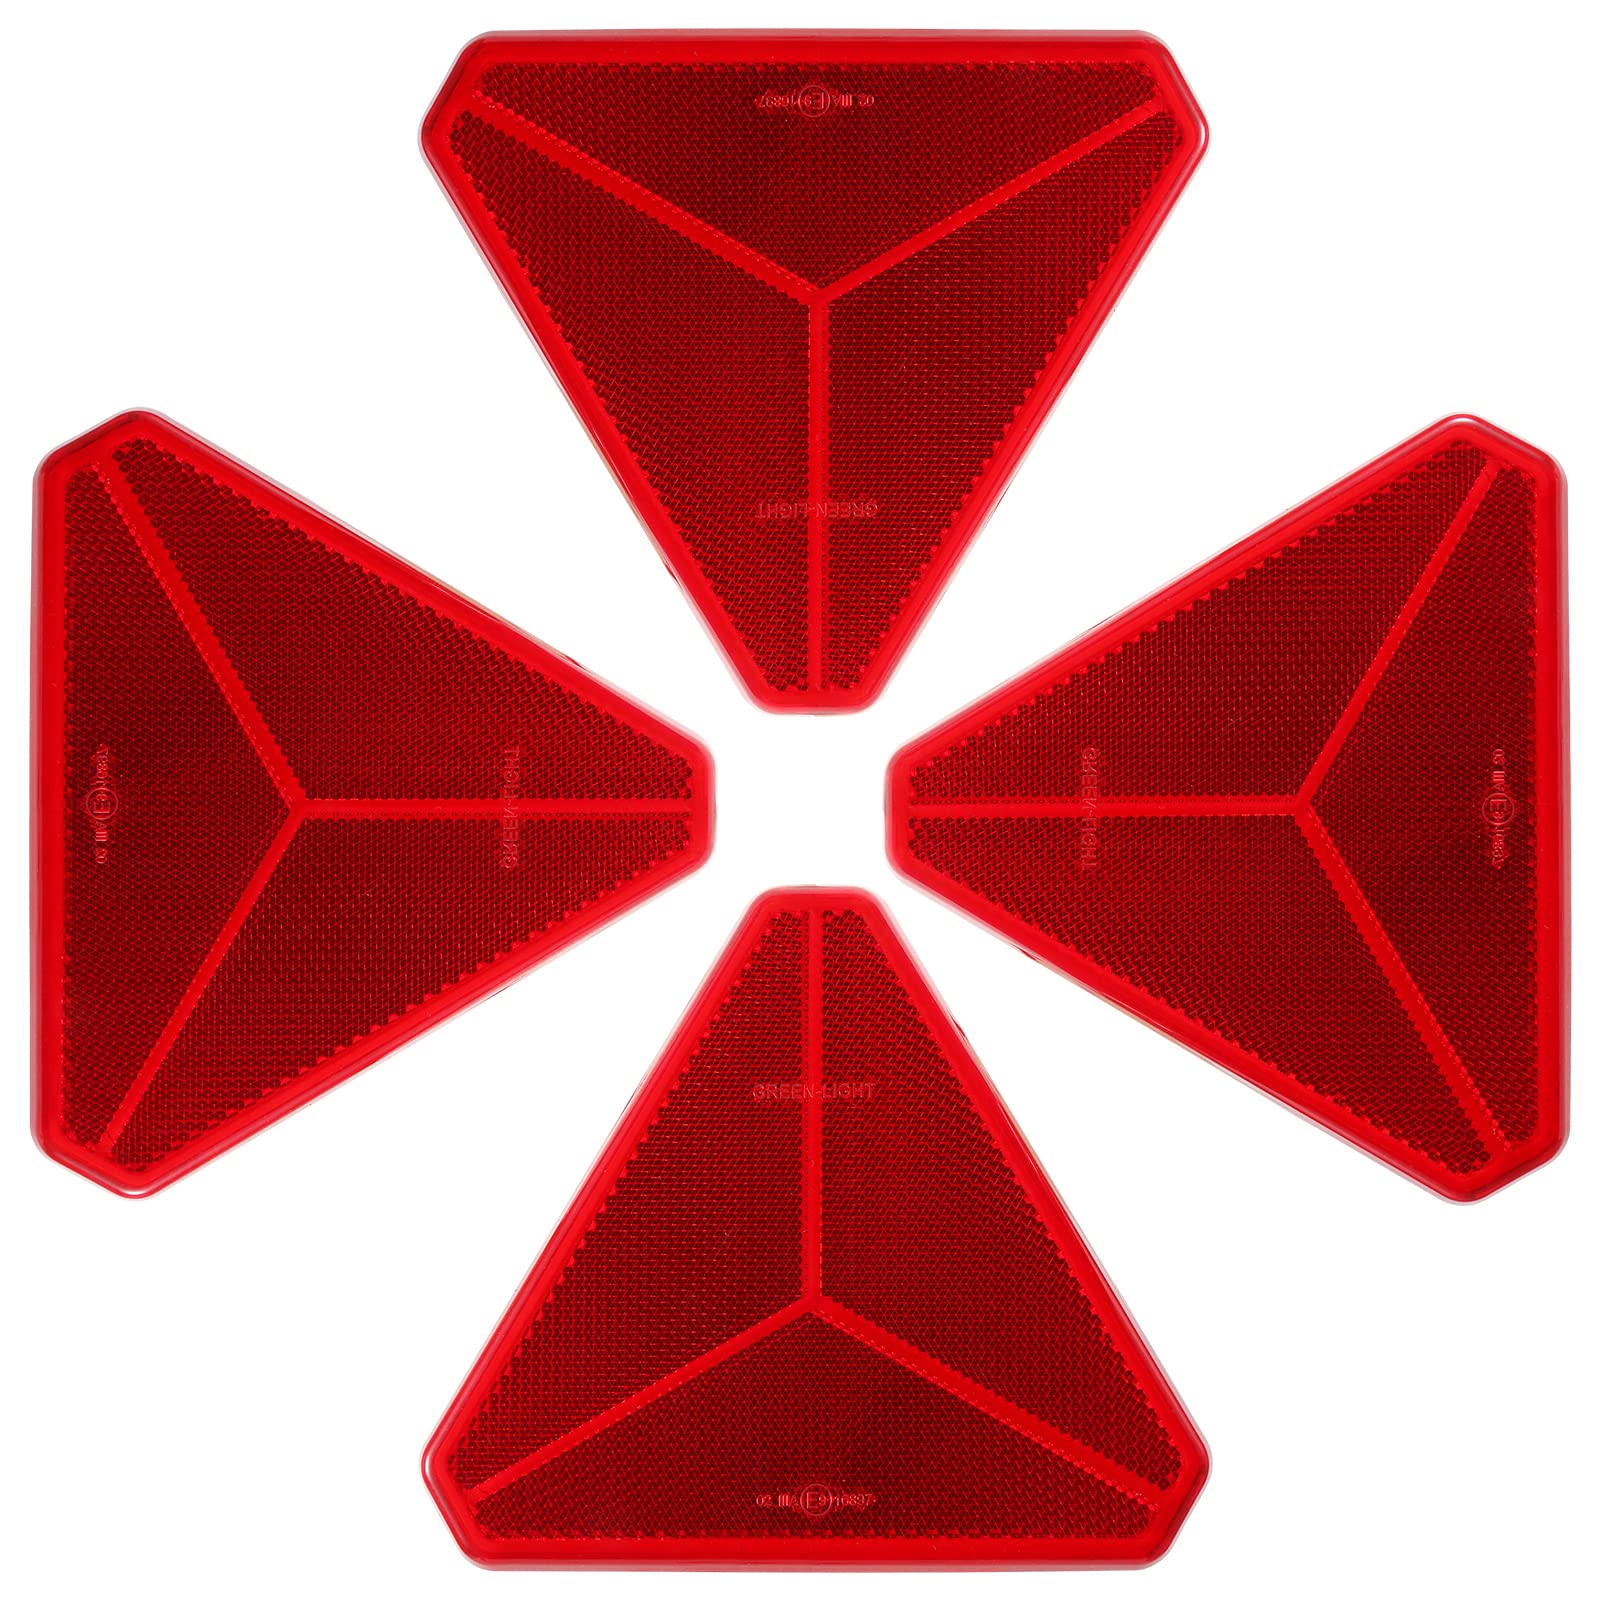 SPARKMOTO Dreieck Rückstrahler selbstklebend,anhänger dreieck rückstrahler reflektor,reflektoren anhänger,reflektor rot selbstklebend,Nach ECE R3 Class IIIA Norm Dreieck rückstrahler rot(4 Stück) von SPARKMOTO